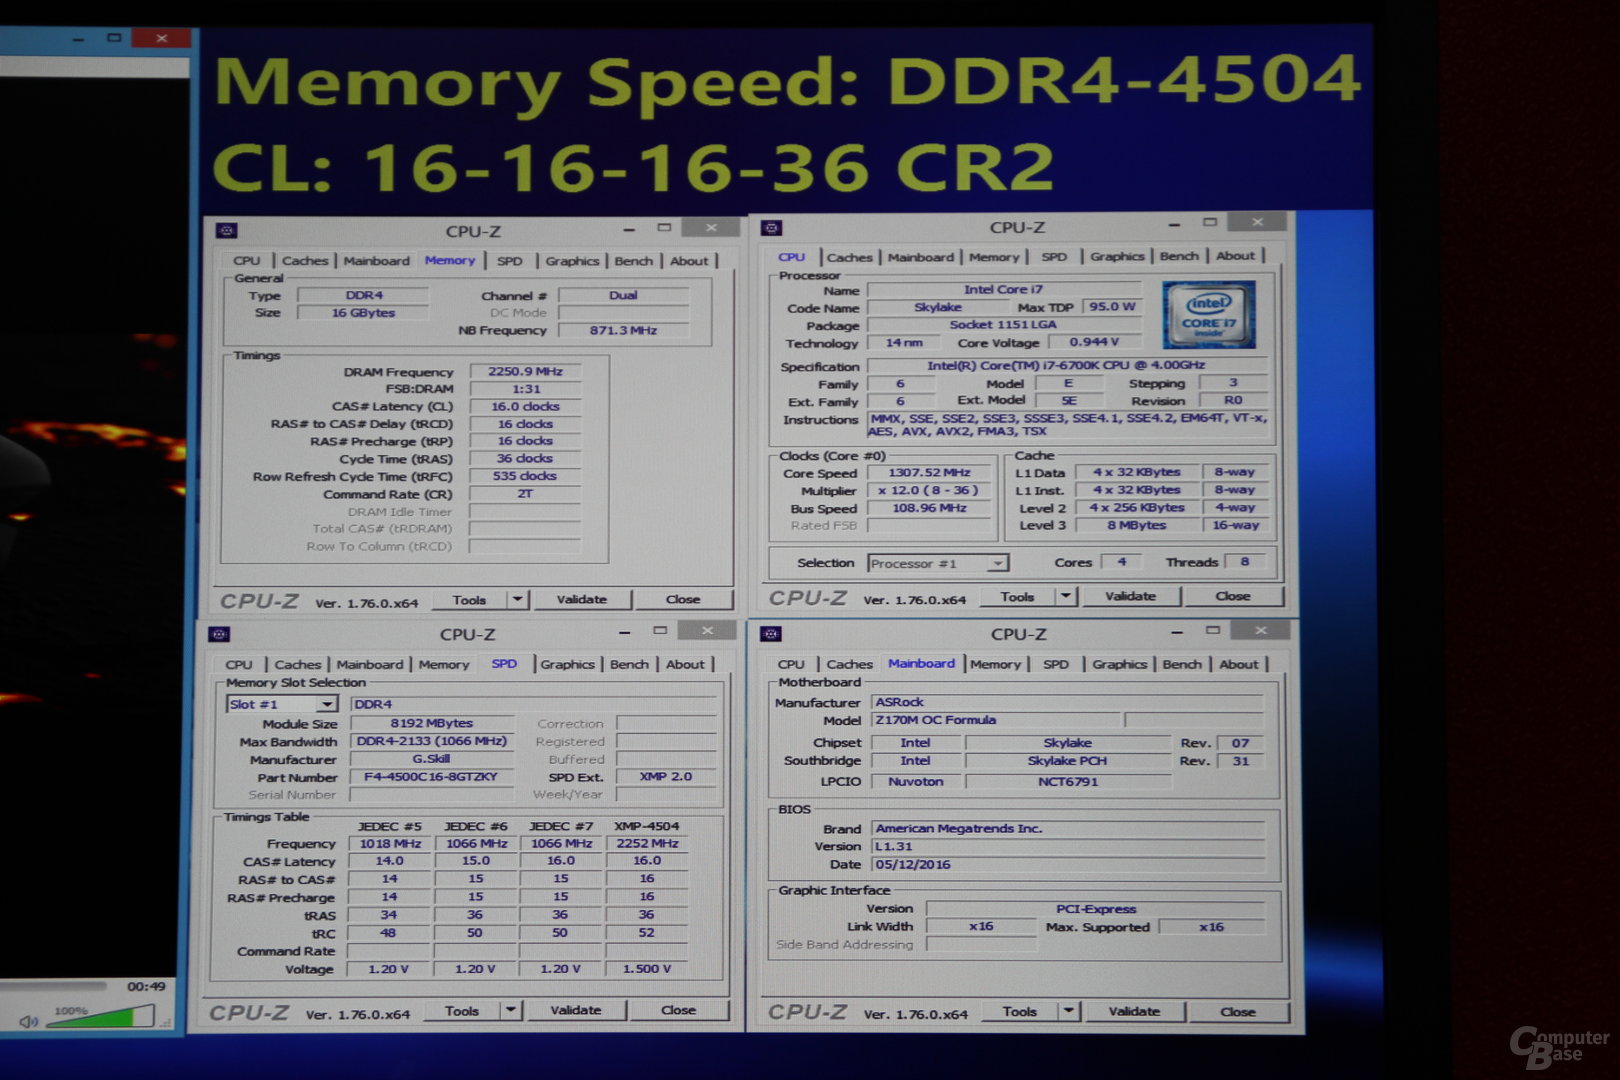 G.Skill Trident Z als serienreifes DDR4-DIMM-Kit mit 4.500 MHz bei CL16